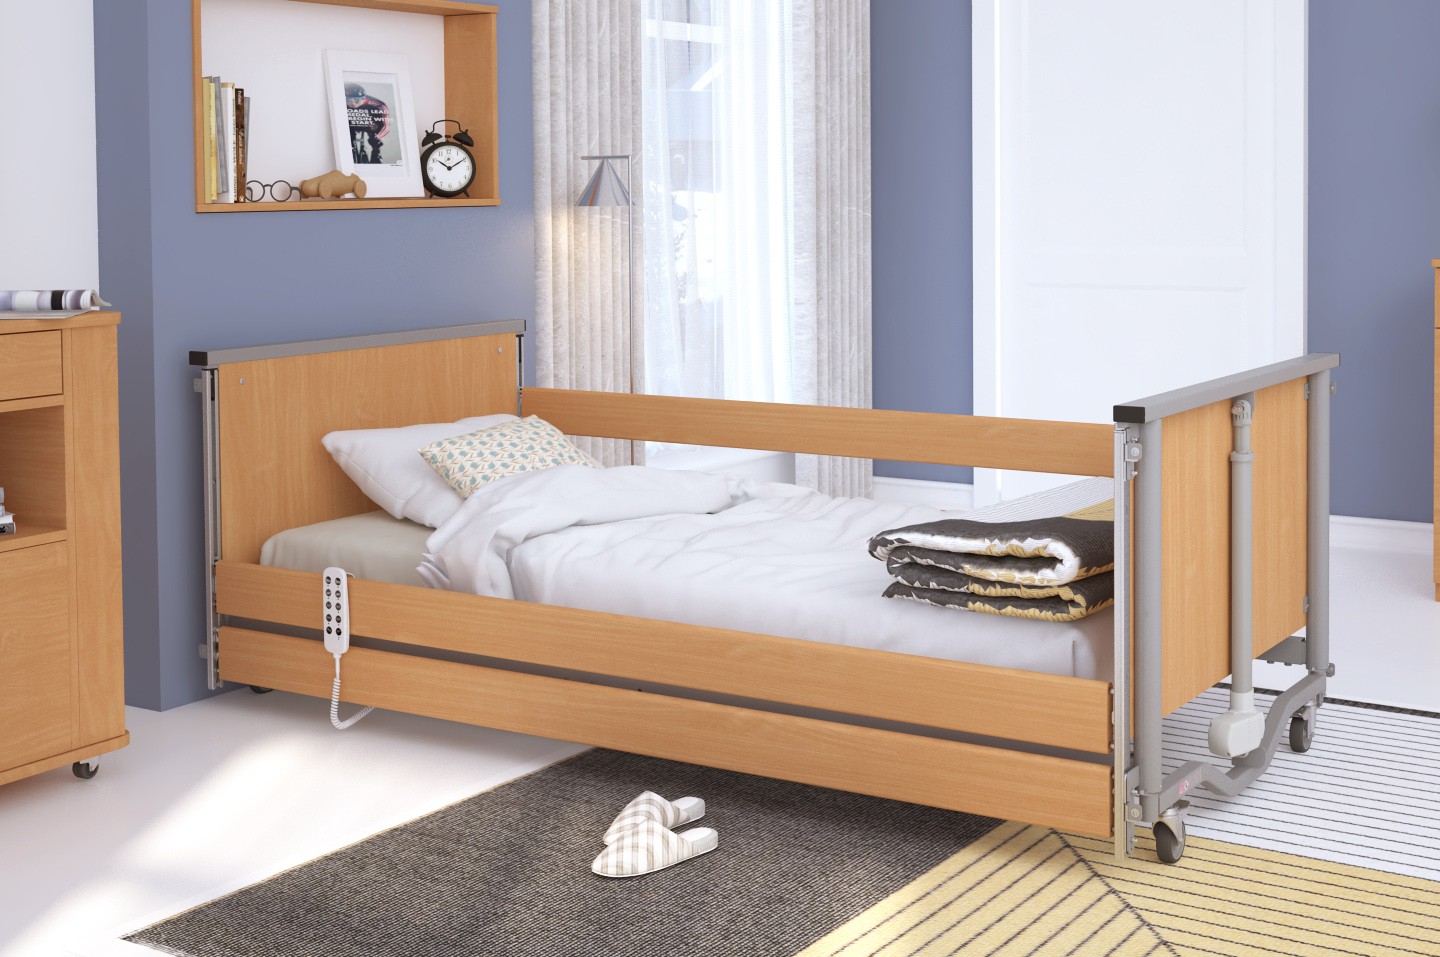 Łóżko rehabilitacyjne regulowane  TAURUS 2 LOW z możliwością obniżenia pozycji leża RehaBed : Rodzaj leża - Drewniane, Standardowe kolory ramy łóżka - Buk, Stolik typu Tablet: - Tak, Wysięgnik (max odciążenie 80 kg): - Tak